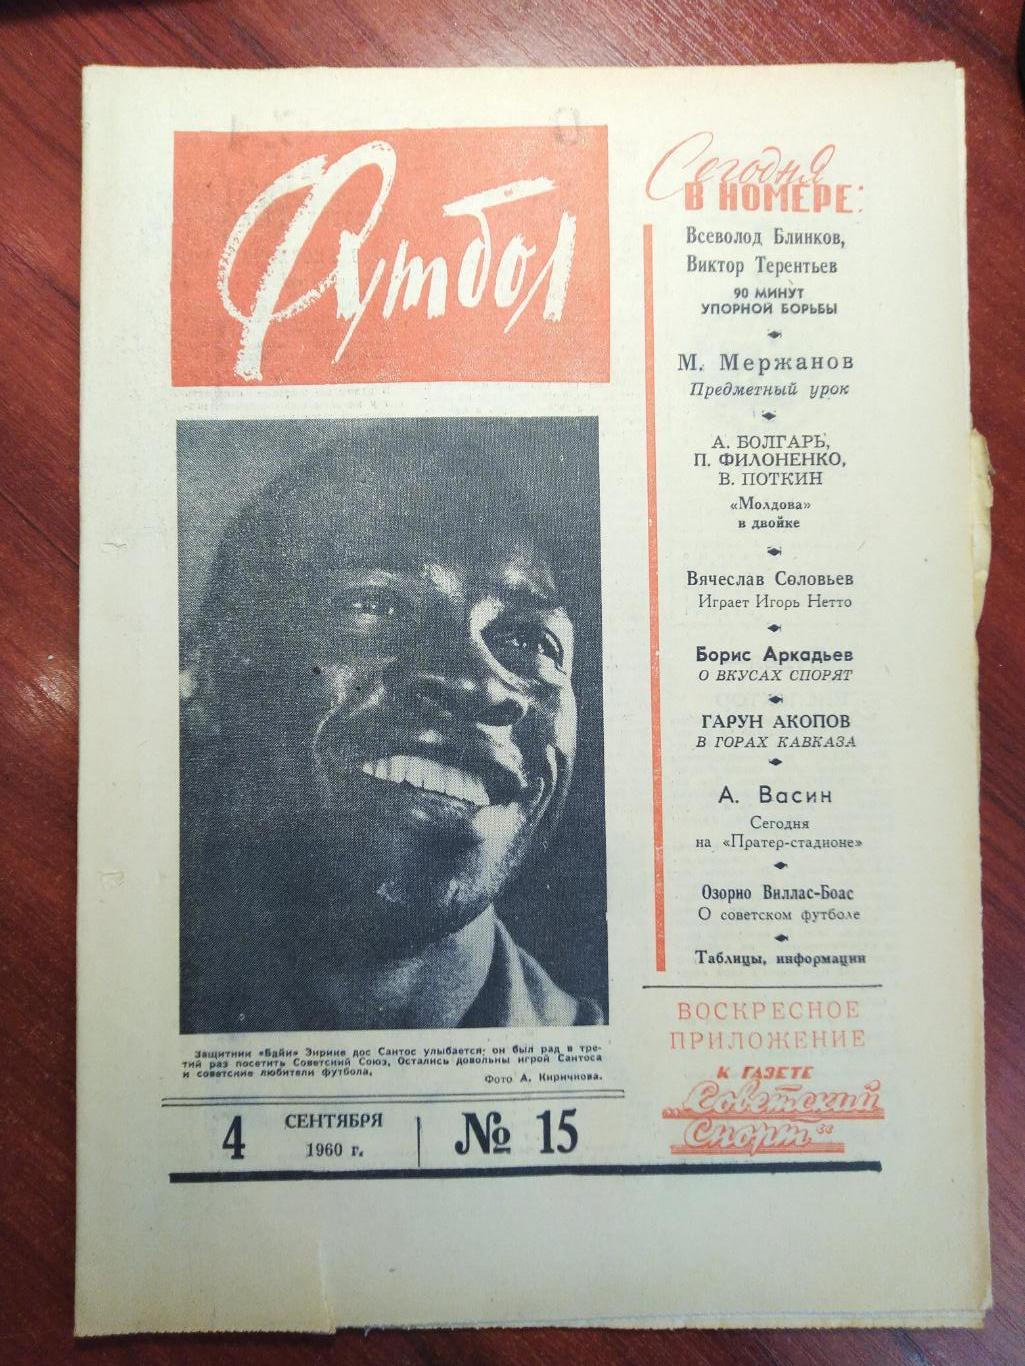 Еженедельник Футбол №15 от 4 сентября 1960.Первый год выпуска!